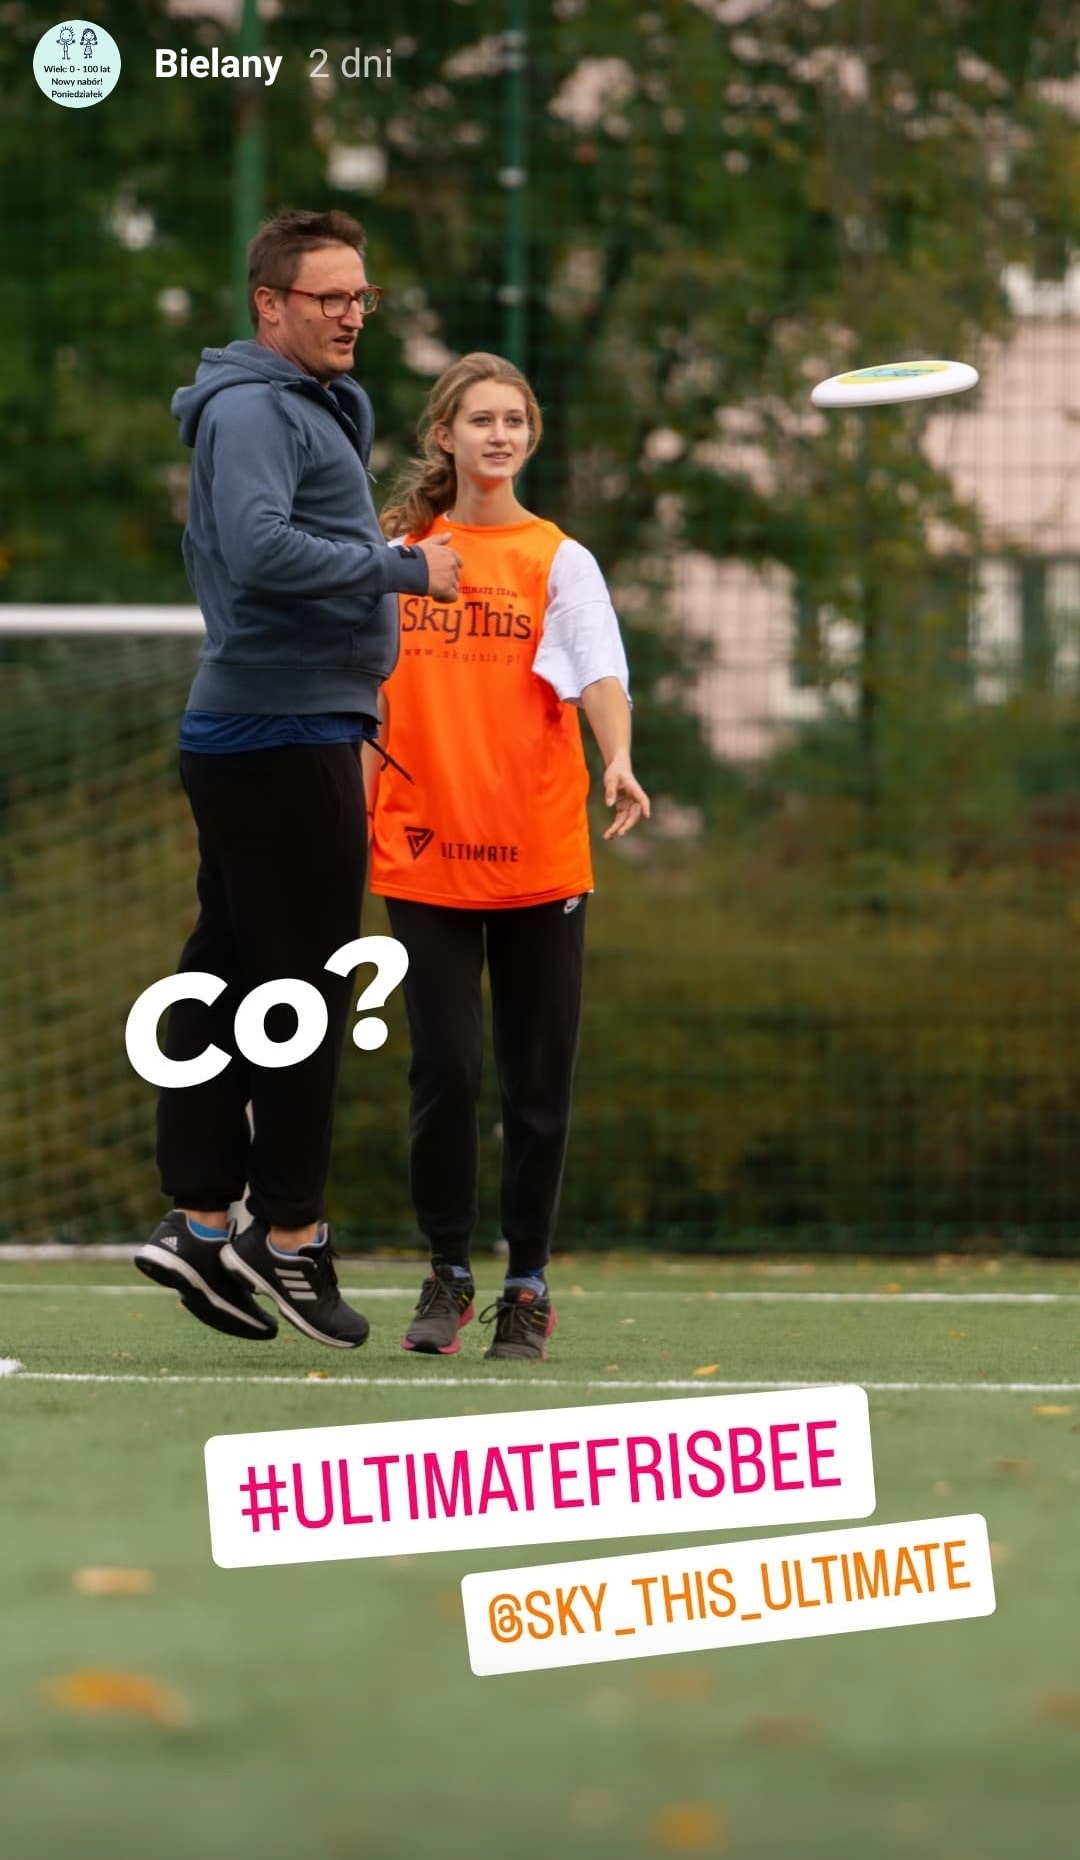 Zajęcia sportowe - Ultimate frisbee na Bielanach